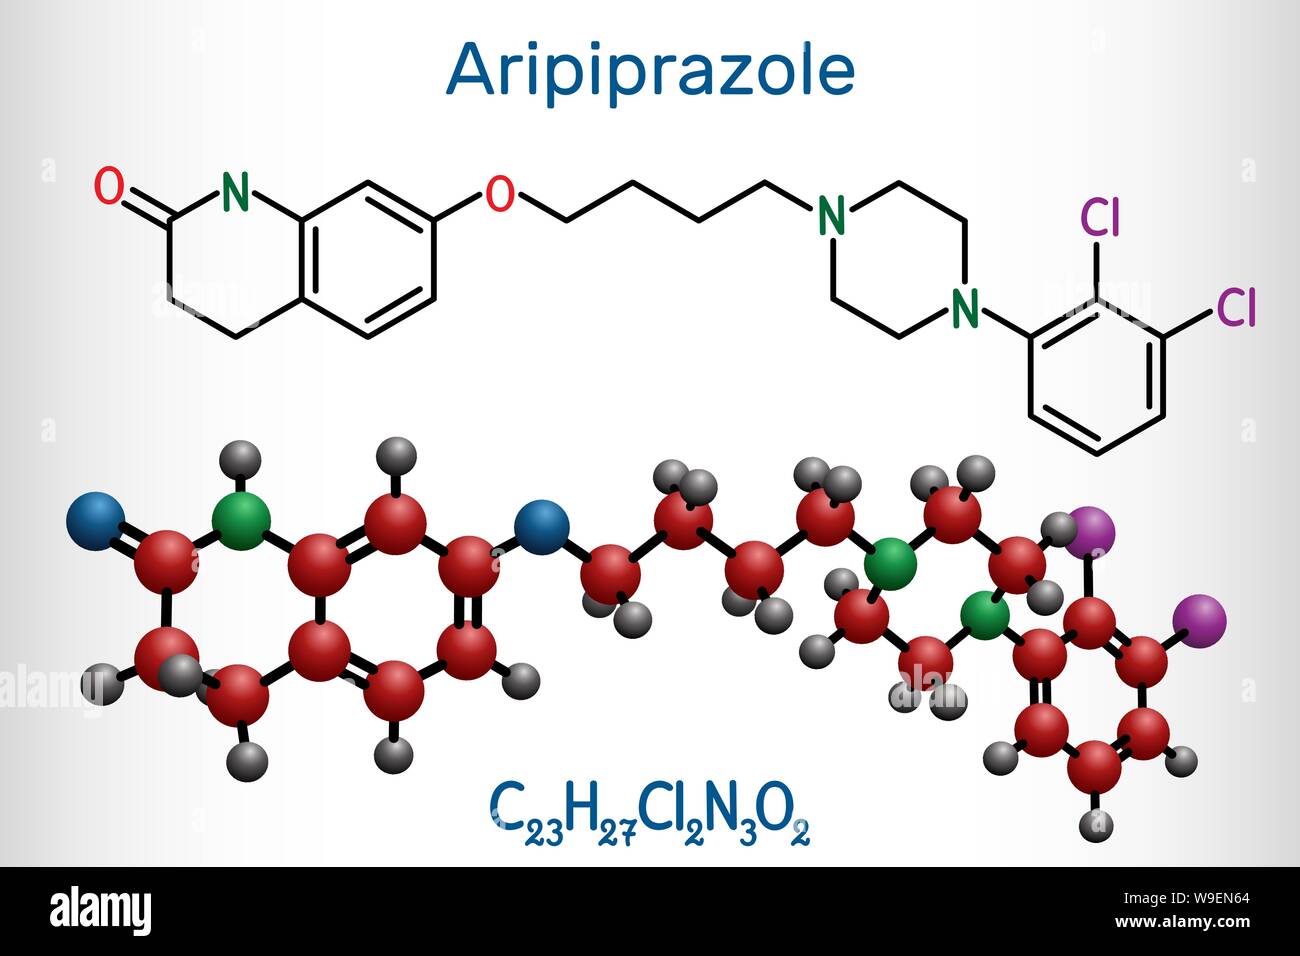 Aripiprazol, Neurotransmitter, atypisches antipsychotisches Rauschgift Molekül. Strukturelle chemische Formel und Molekül-Modell. Vector Illustration Stock Vektor